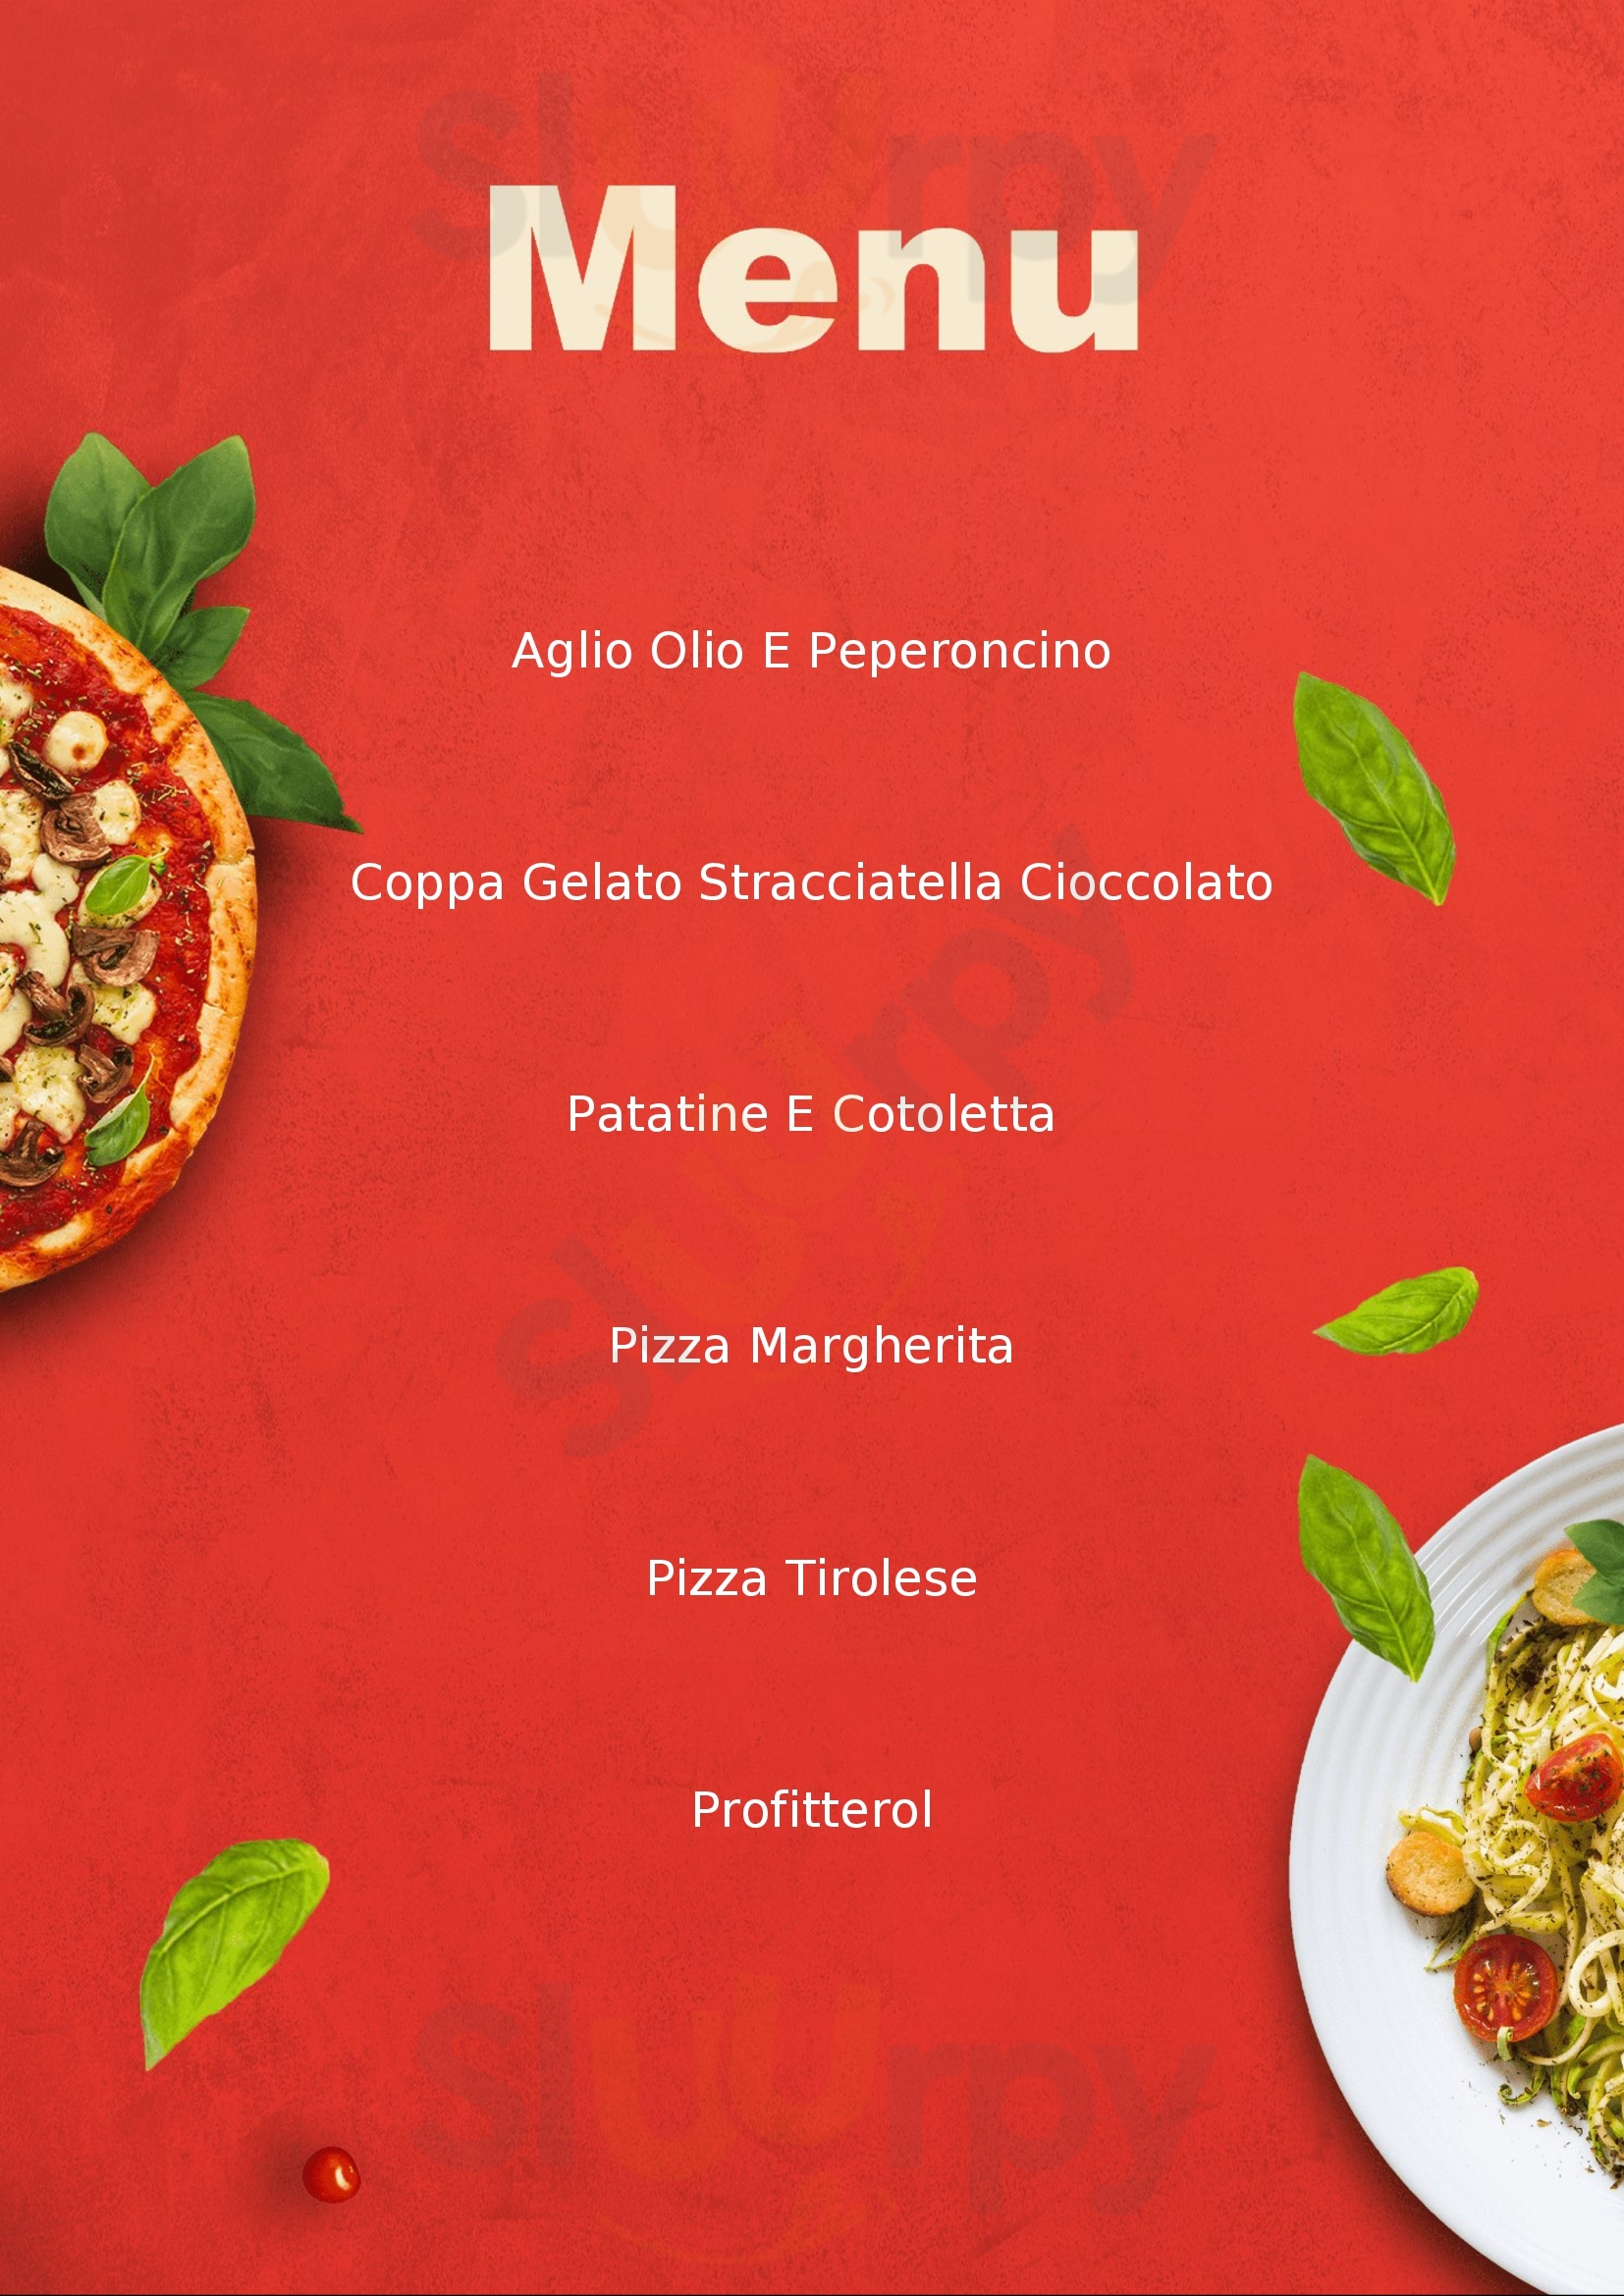 Al Meazza Ristorante Pizzeria Milano menù 1 pagina